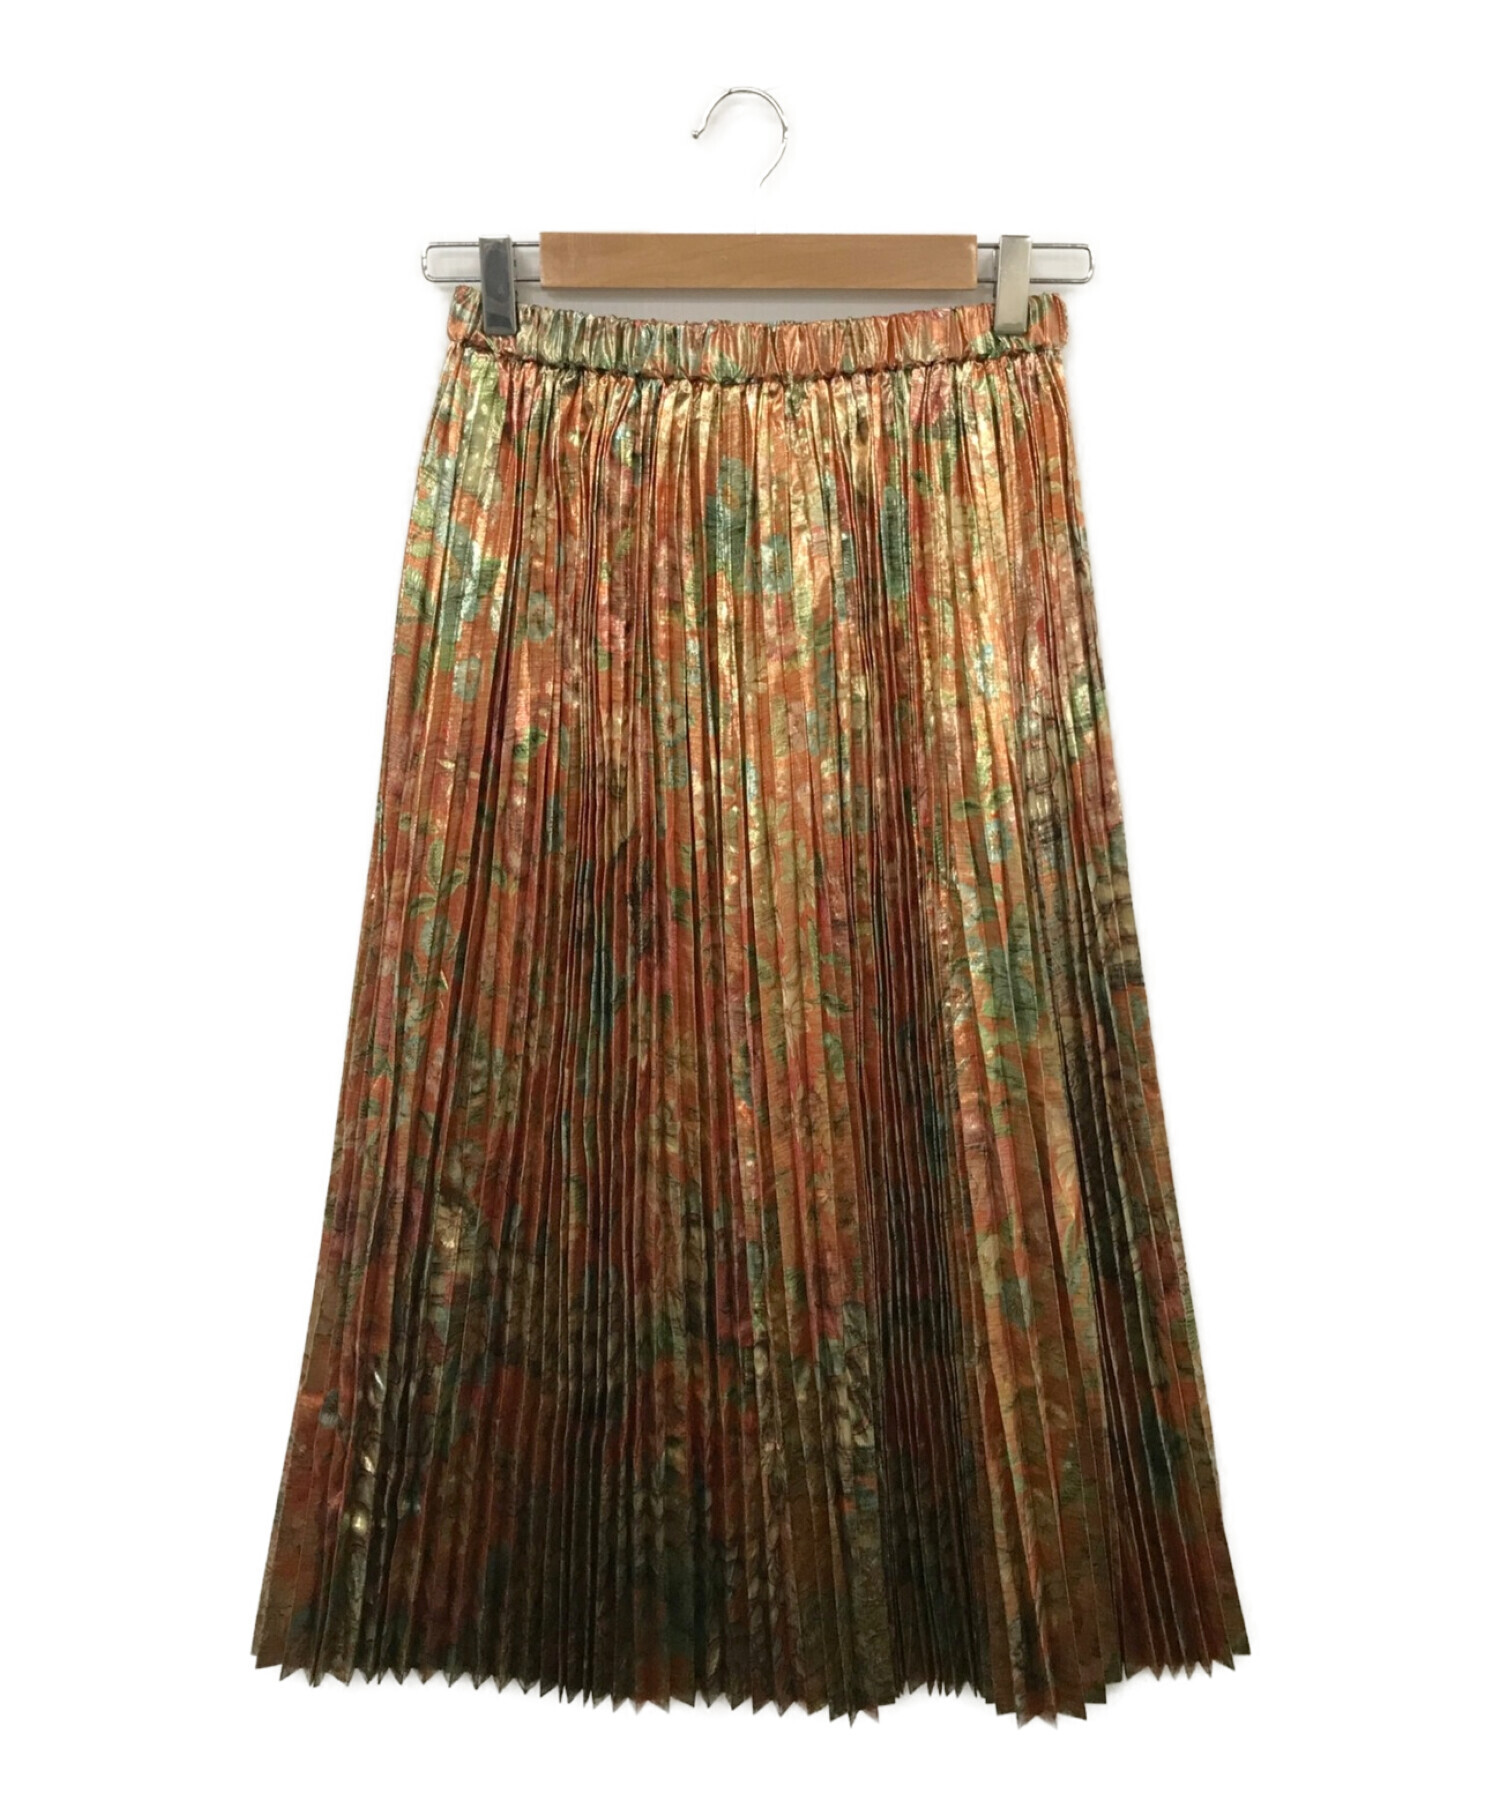 ジュンヤワタナベのプリーツスカートです。